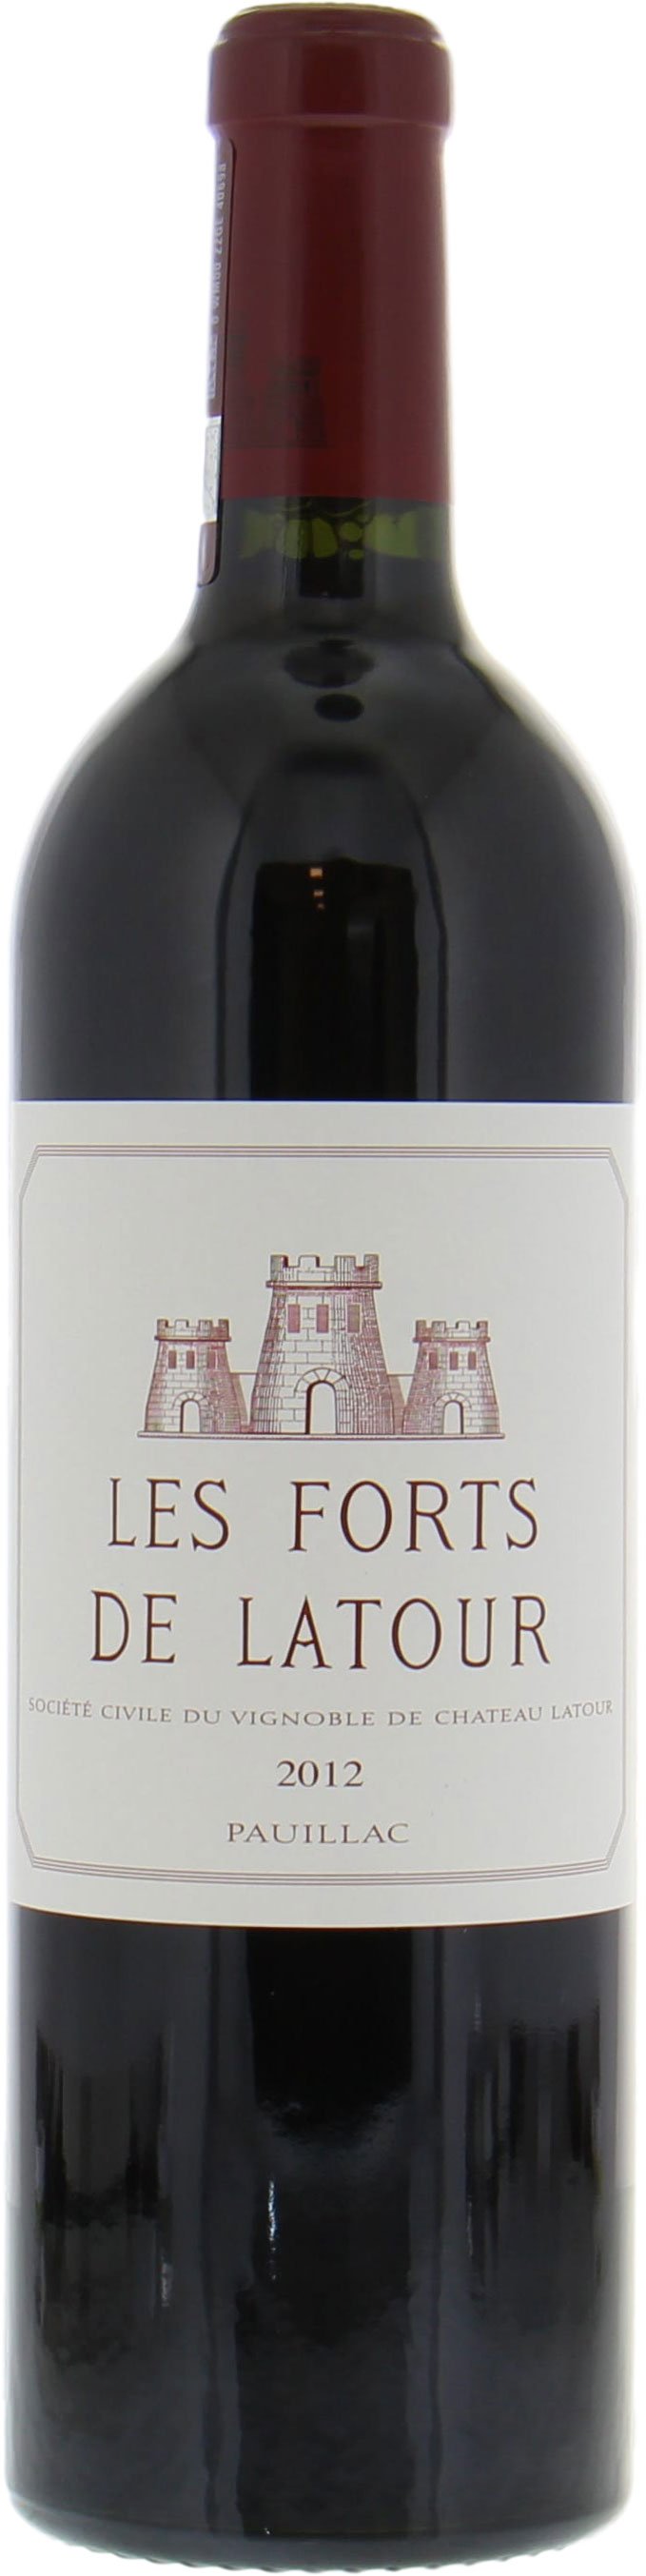 Chateau Latour - Les Forts de Latour 2012 Perfect